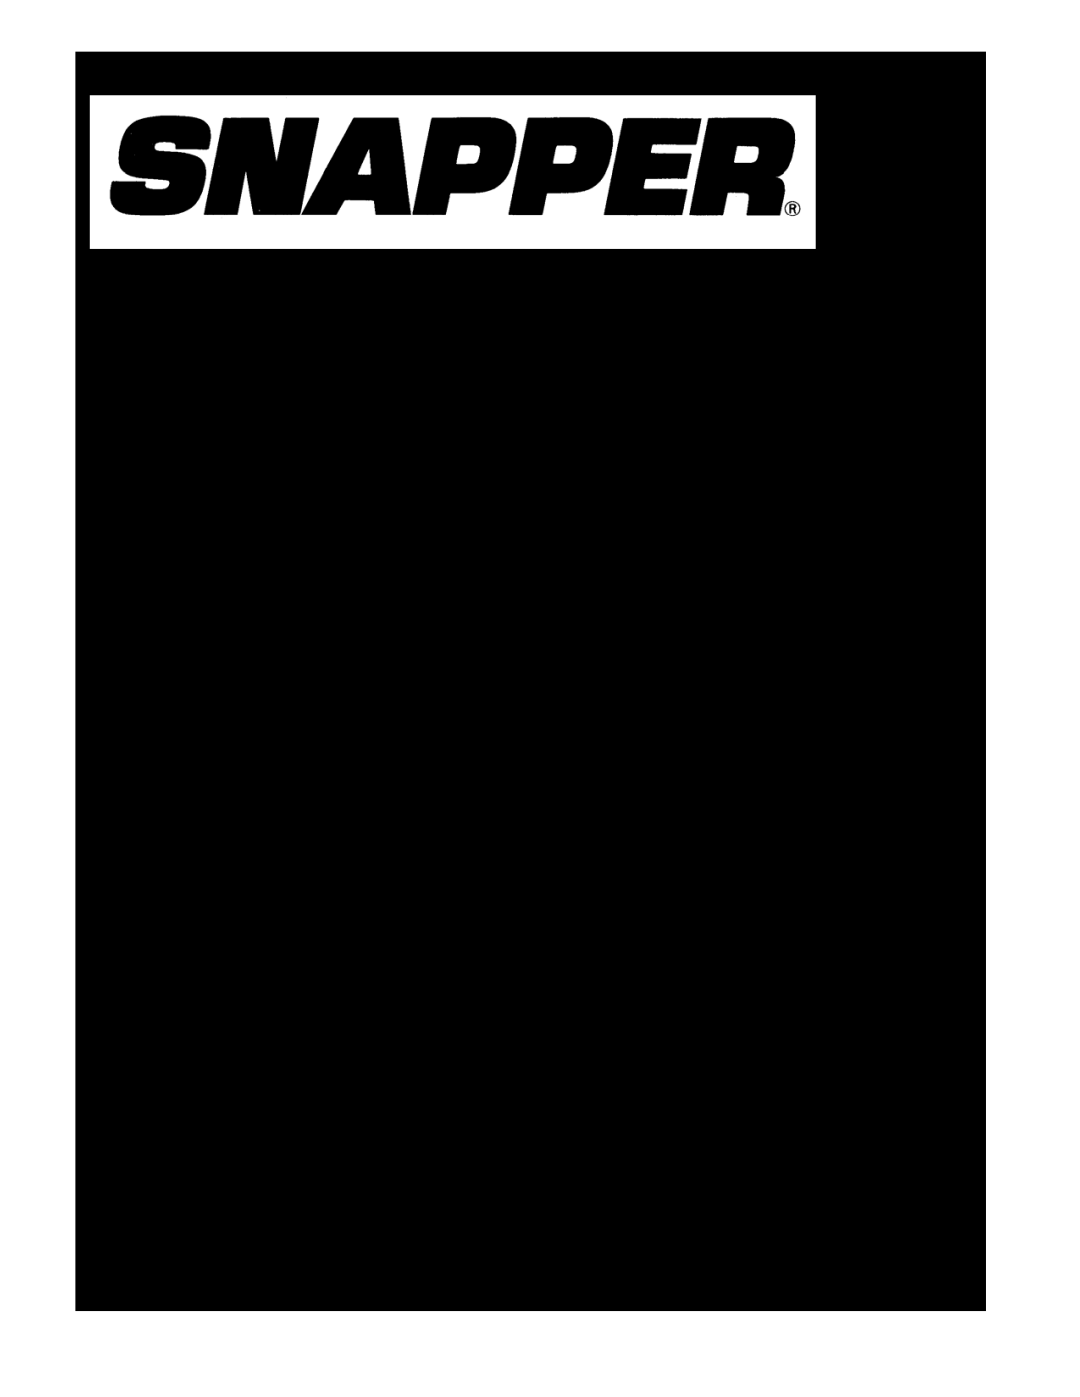 Snapper 7800764, 7800772 manual Reproduction, Parts Manual for, Manual No, 7104803, Revision, 3/11/2011 